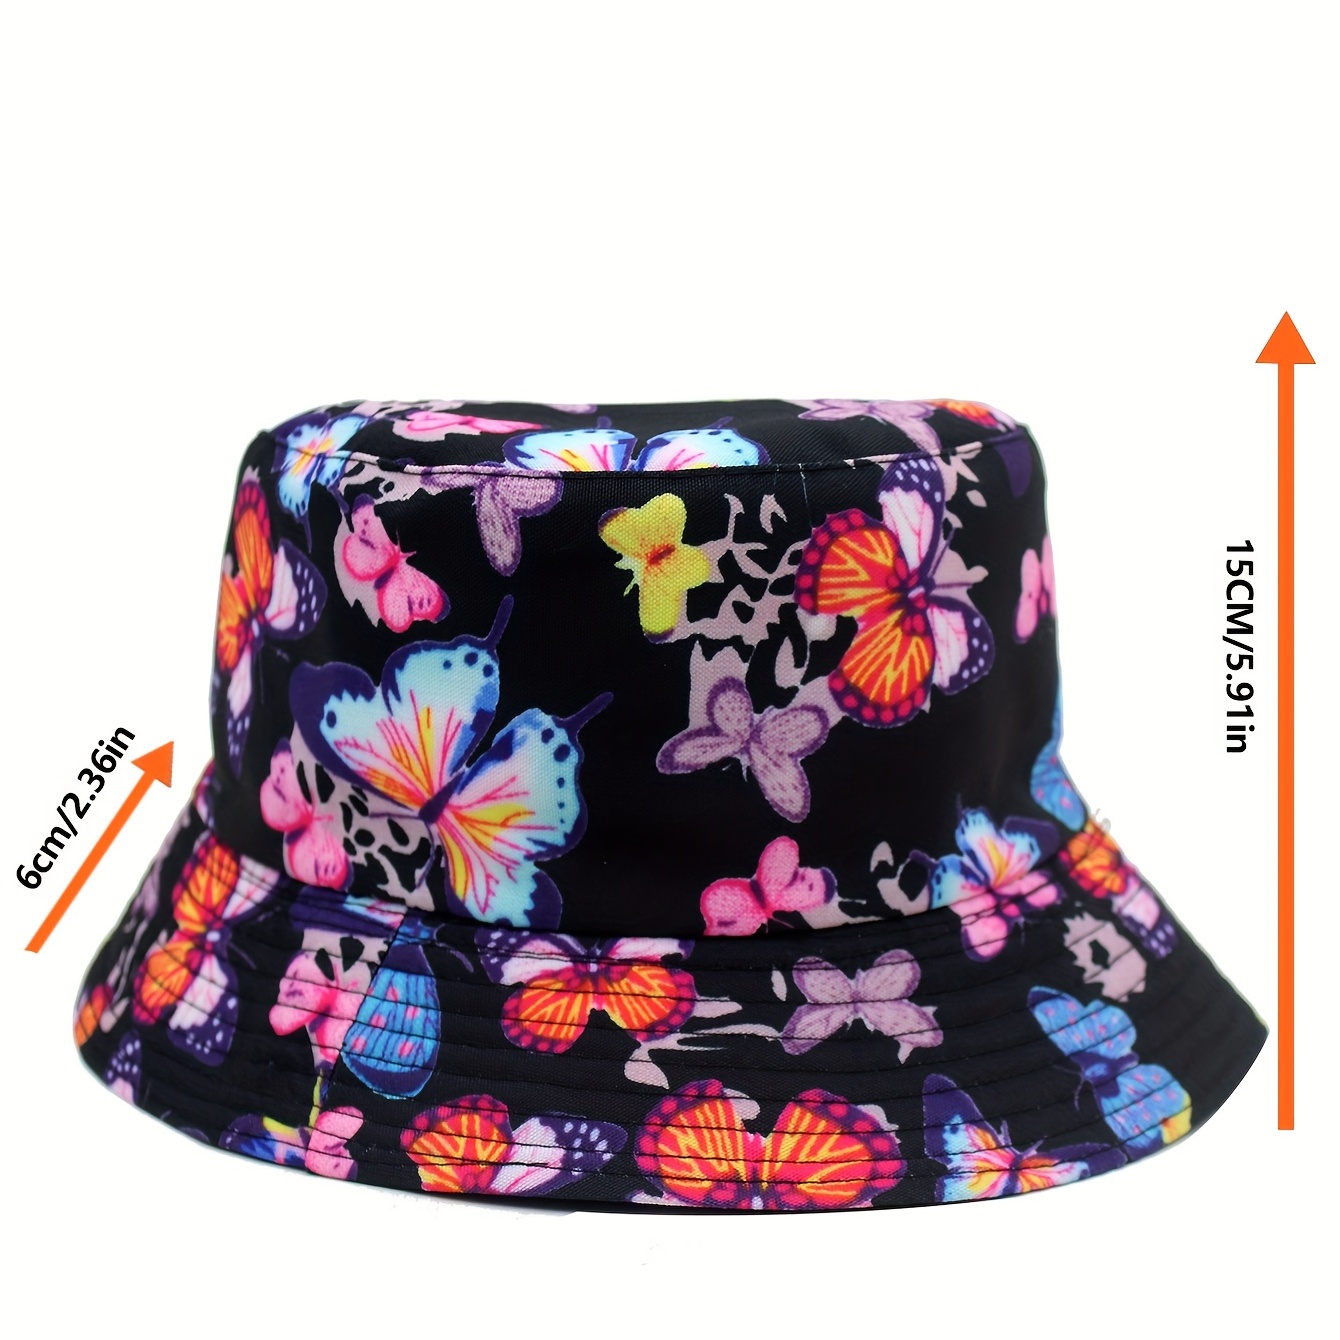 Sunshade Sun Hat Casual Summer Double Sided Wearing Basin Hat Sun